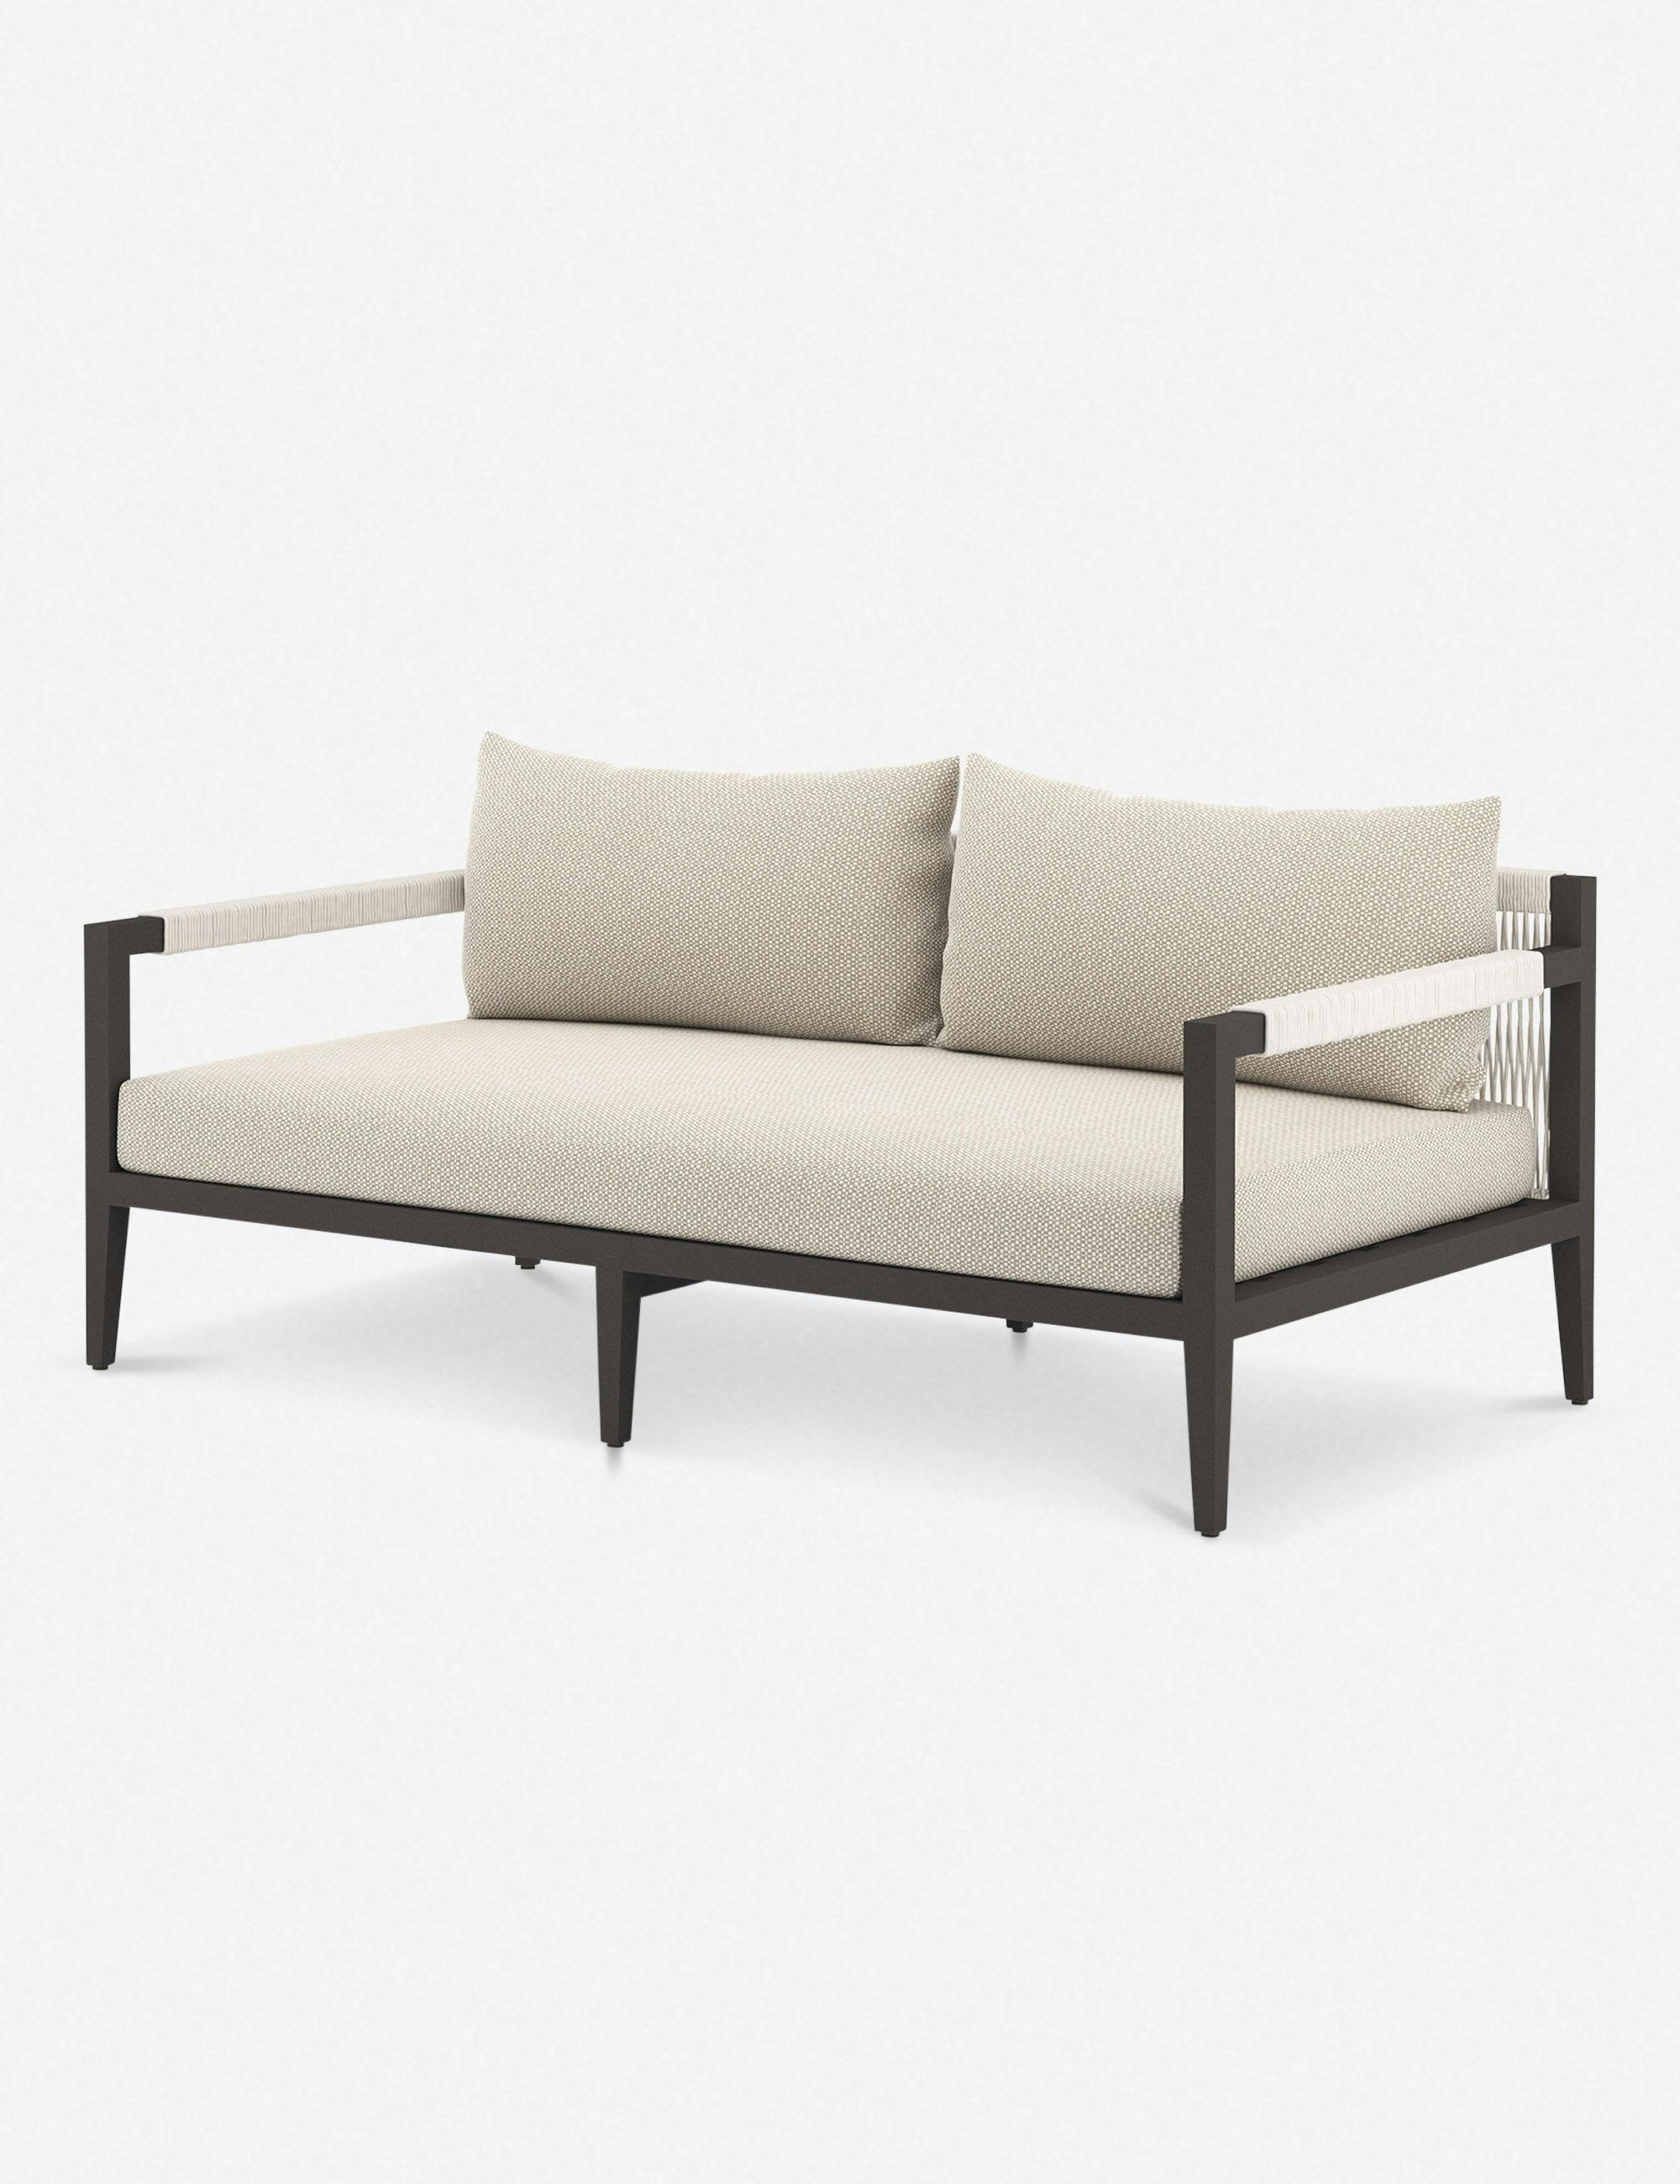 Cadenza 63" Bronze/Sand Contemporary Metal Sectional Sofa